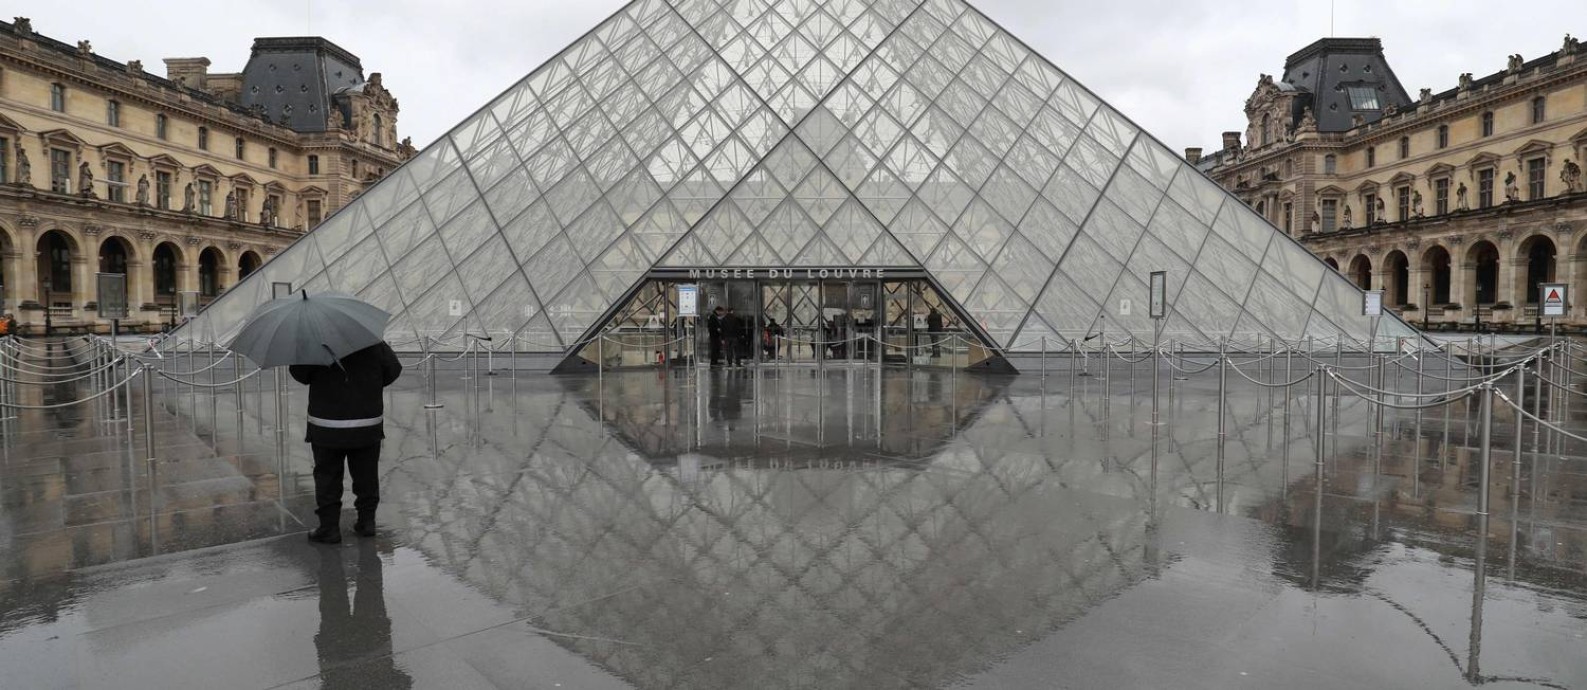 Enigma da Pirâmide. Museu mais visitado do mundo, o Louvre está fechado por tempo indeterminado para prevenir a disseminação do coronavírus Foto: Ludovic Marin / AFP